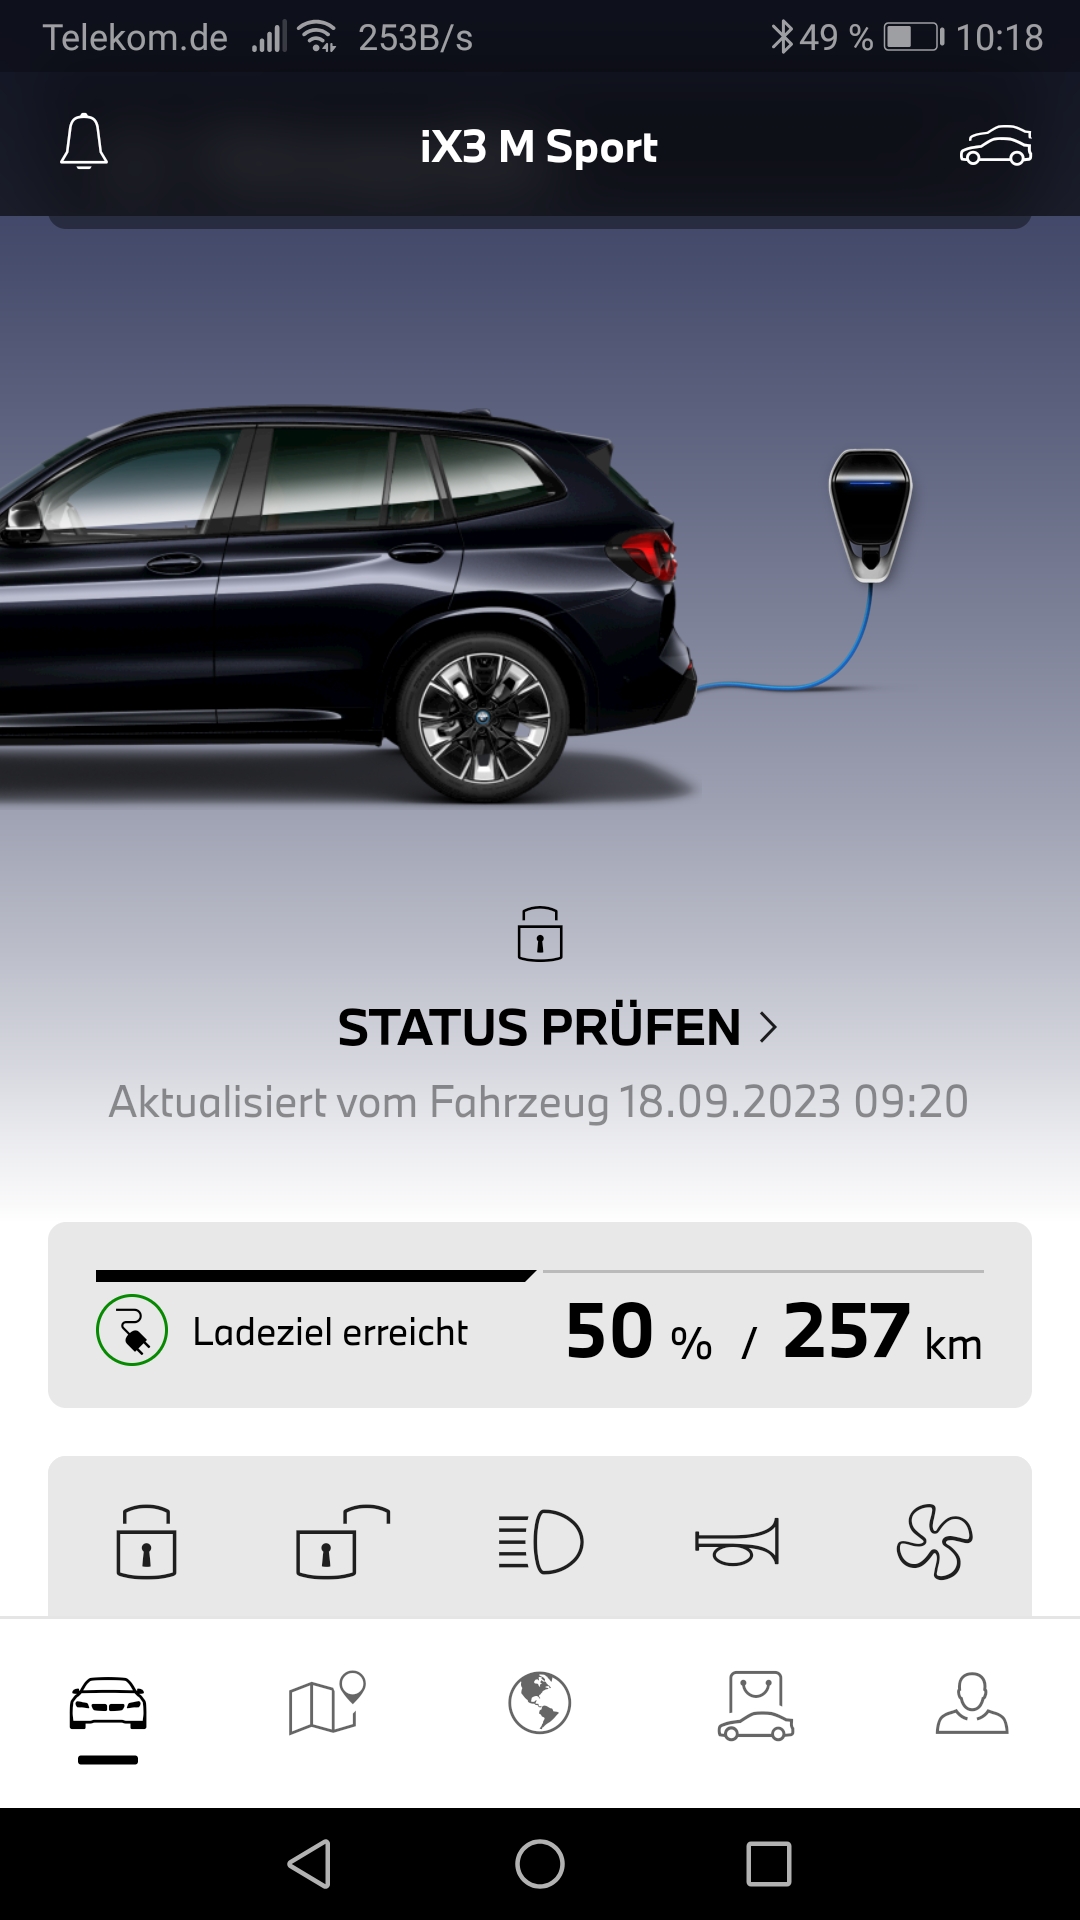 SUV von BMW iX3 mit 50% geladen kommt auf 257 km Reichweite